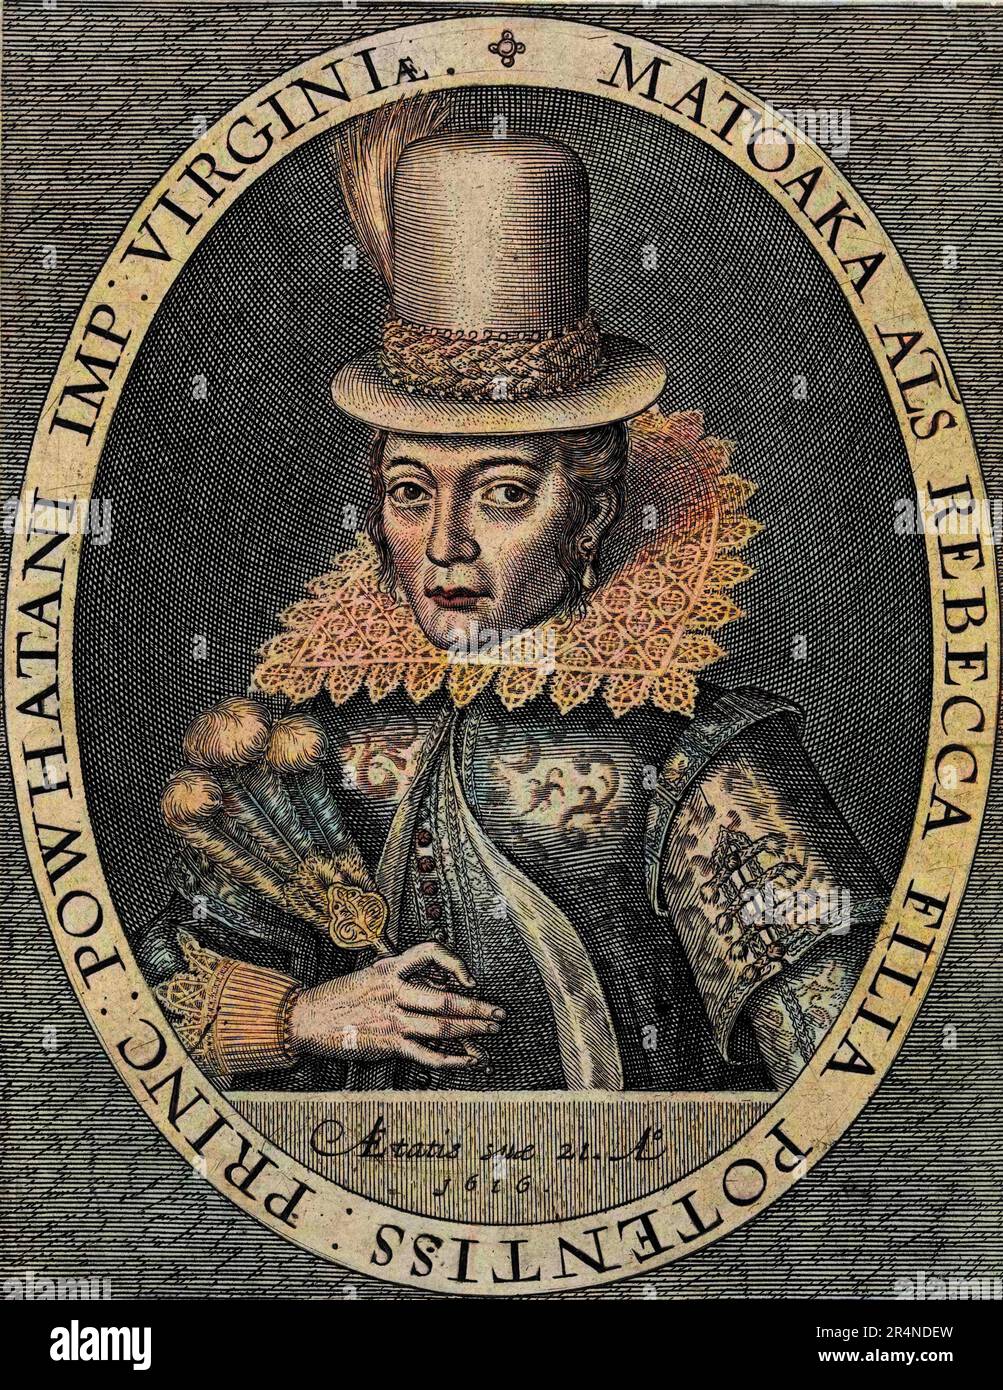 Pocahontas - Portrait de Pocahontas (1595-1617) (ou Mataoka ou Amonute, puis Rebecca Rolfe), princesse amér indienne. Gravure d'apres Simon de passe Banque D'Images